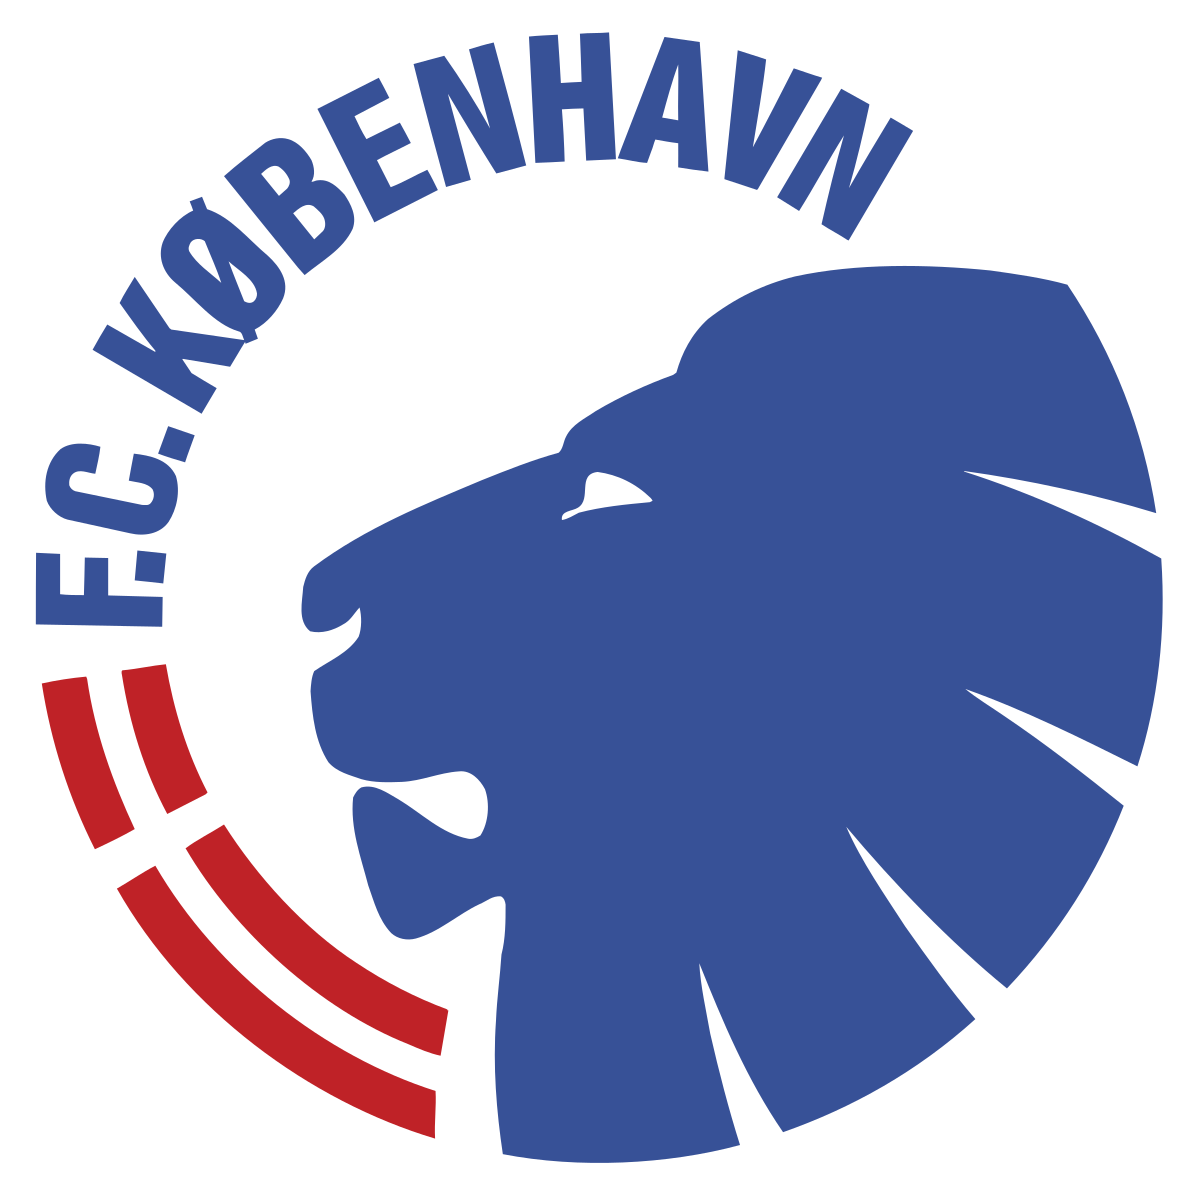 FC Köbenhavn